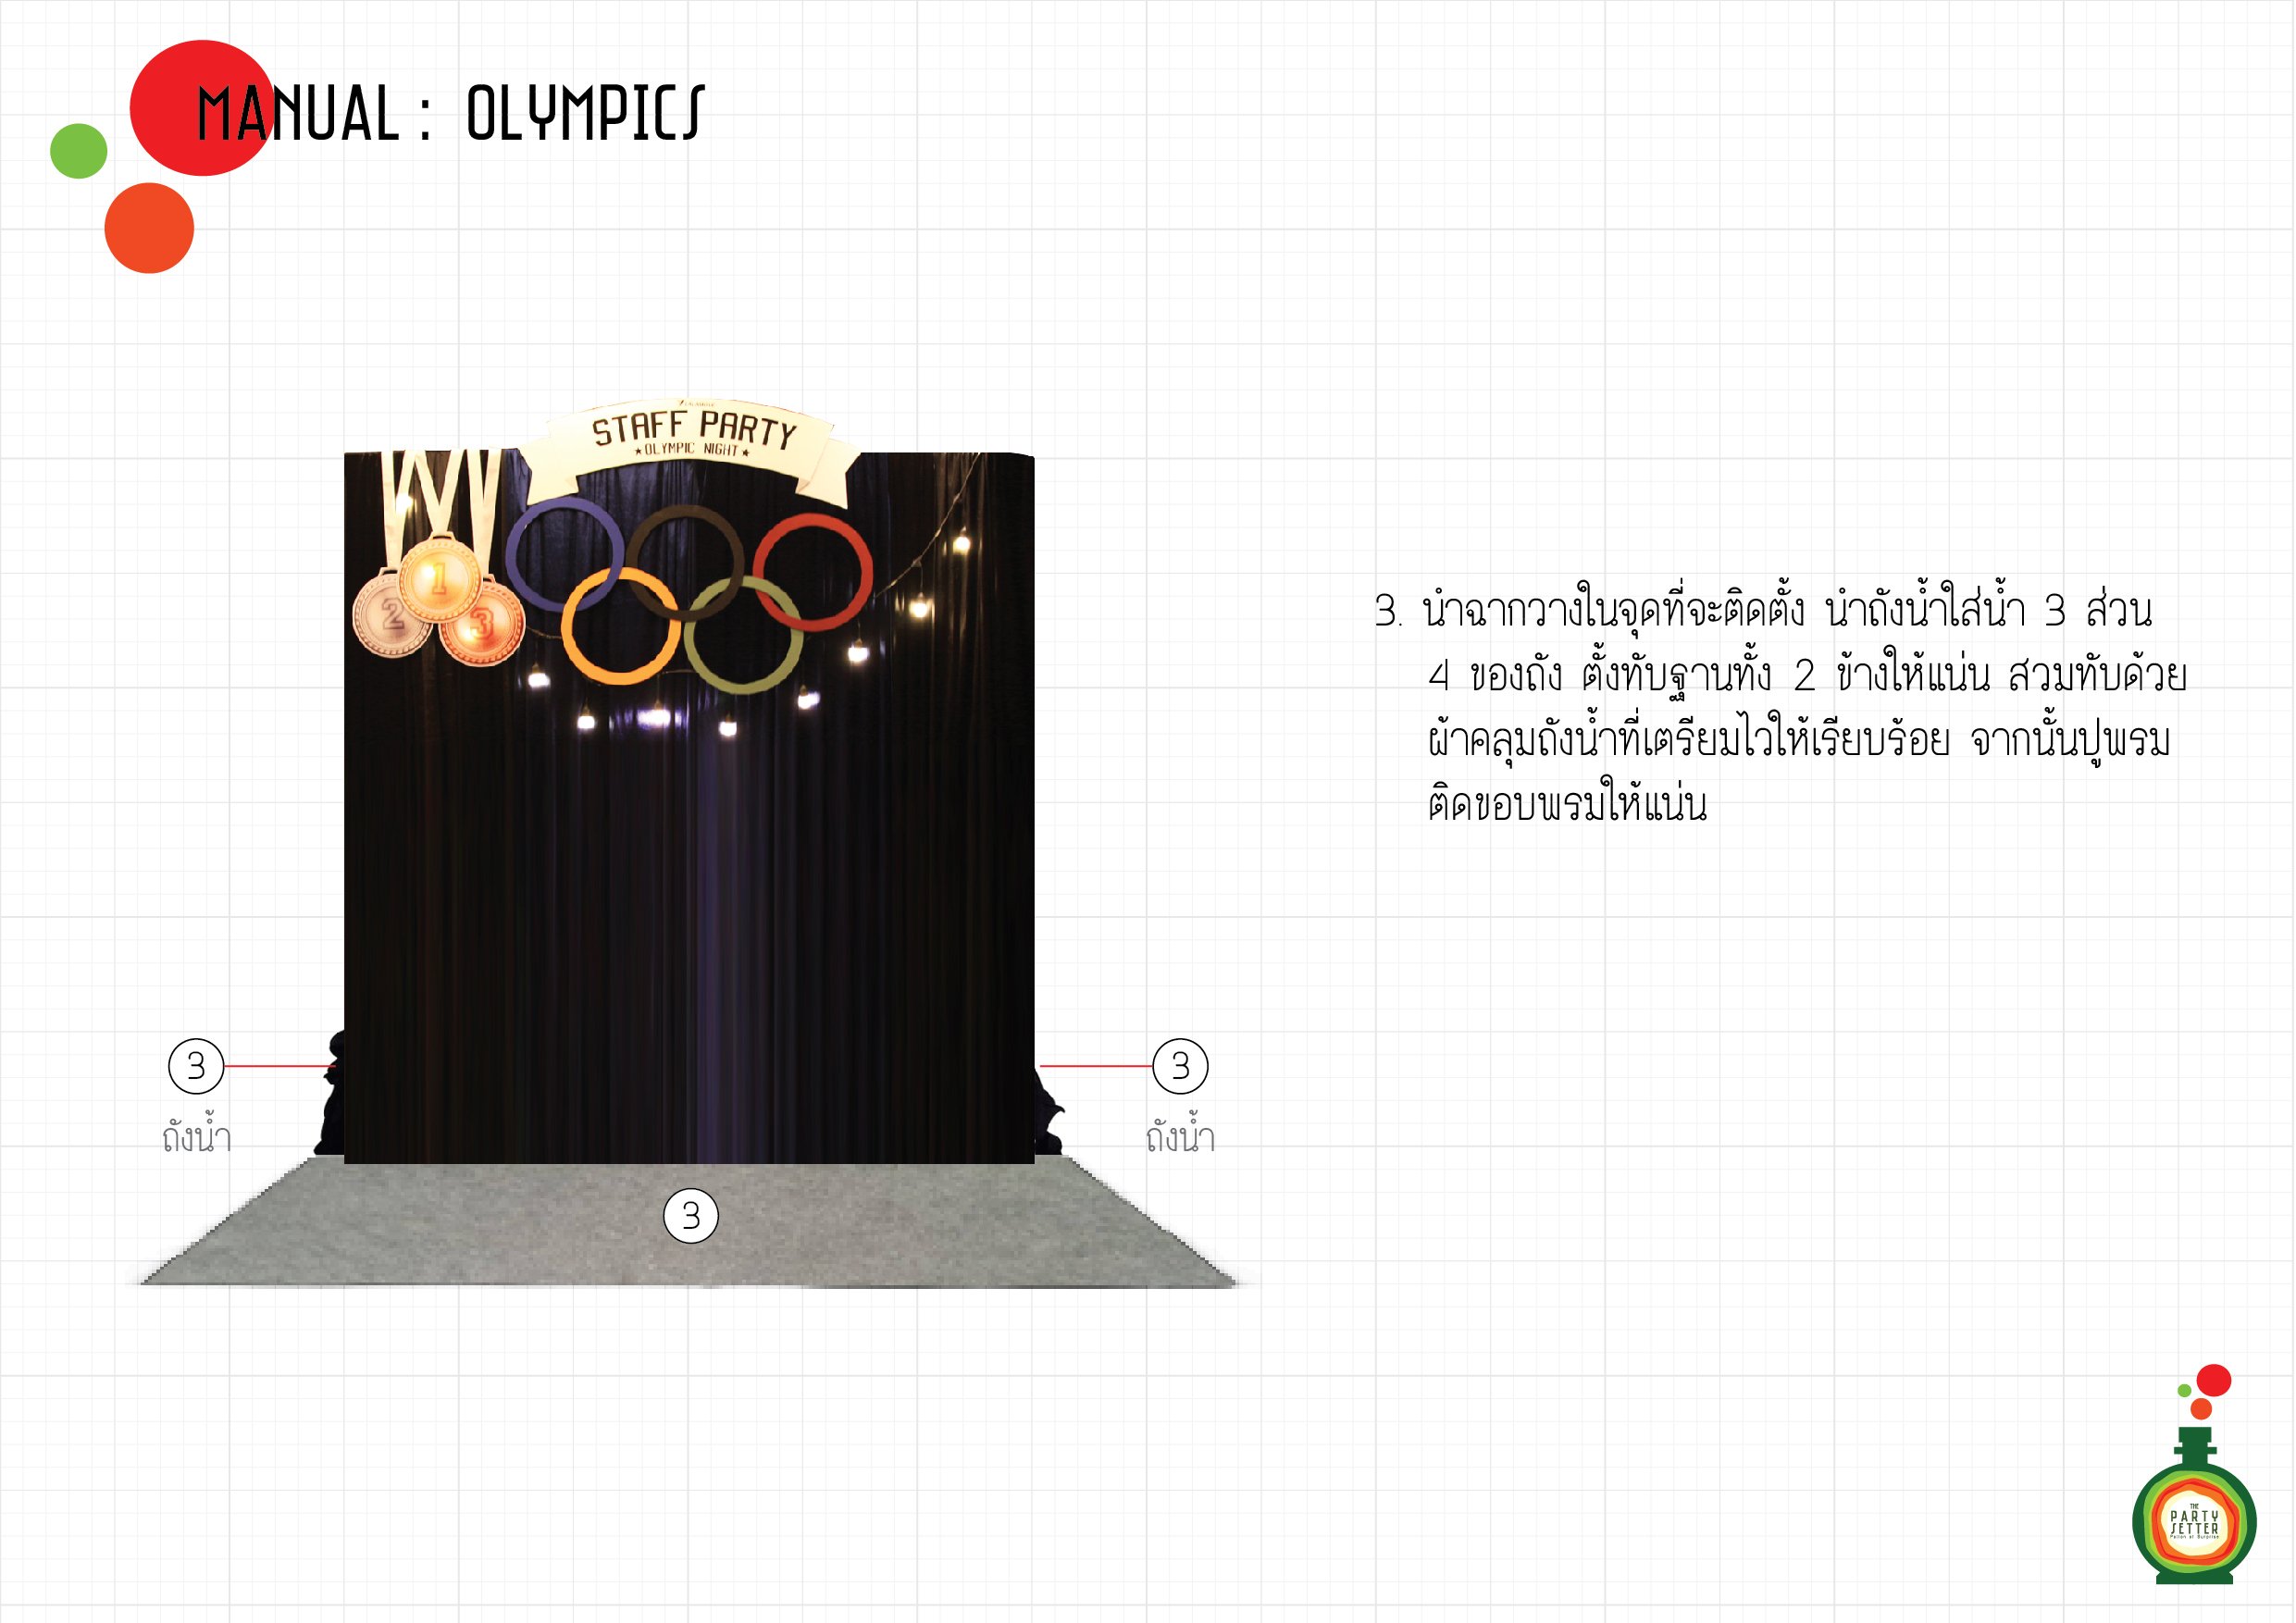 Manual_Olympics-03-01.jpg